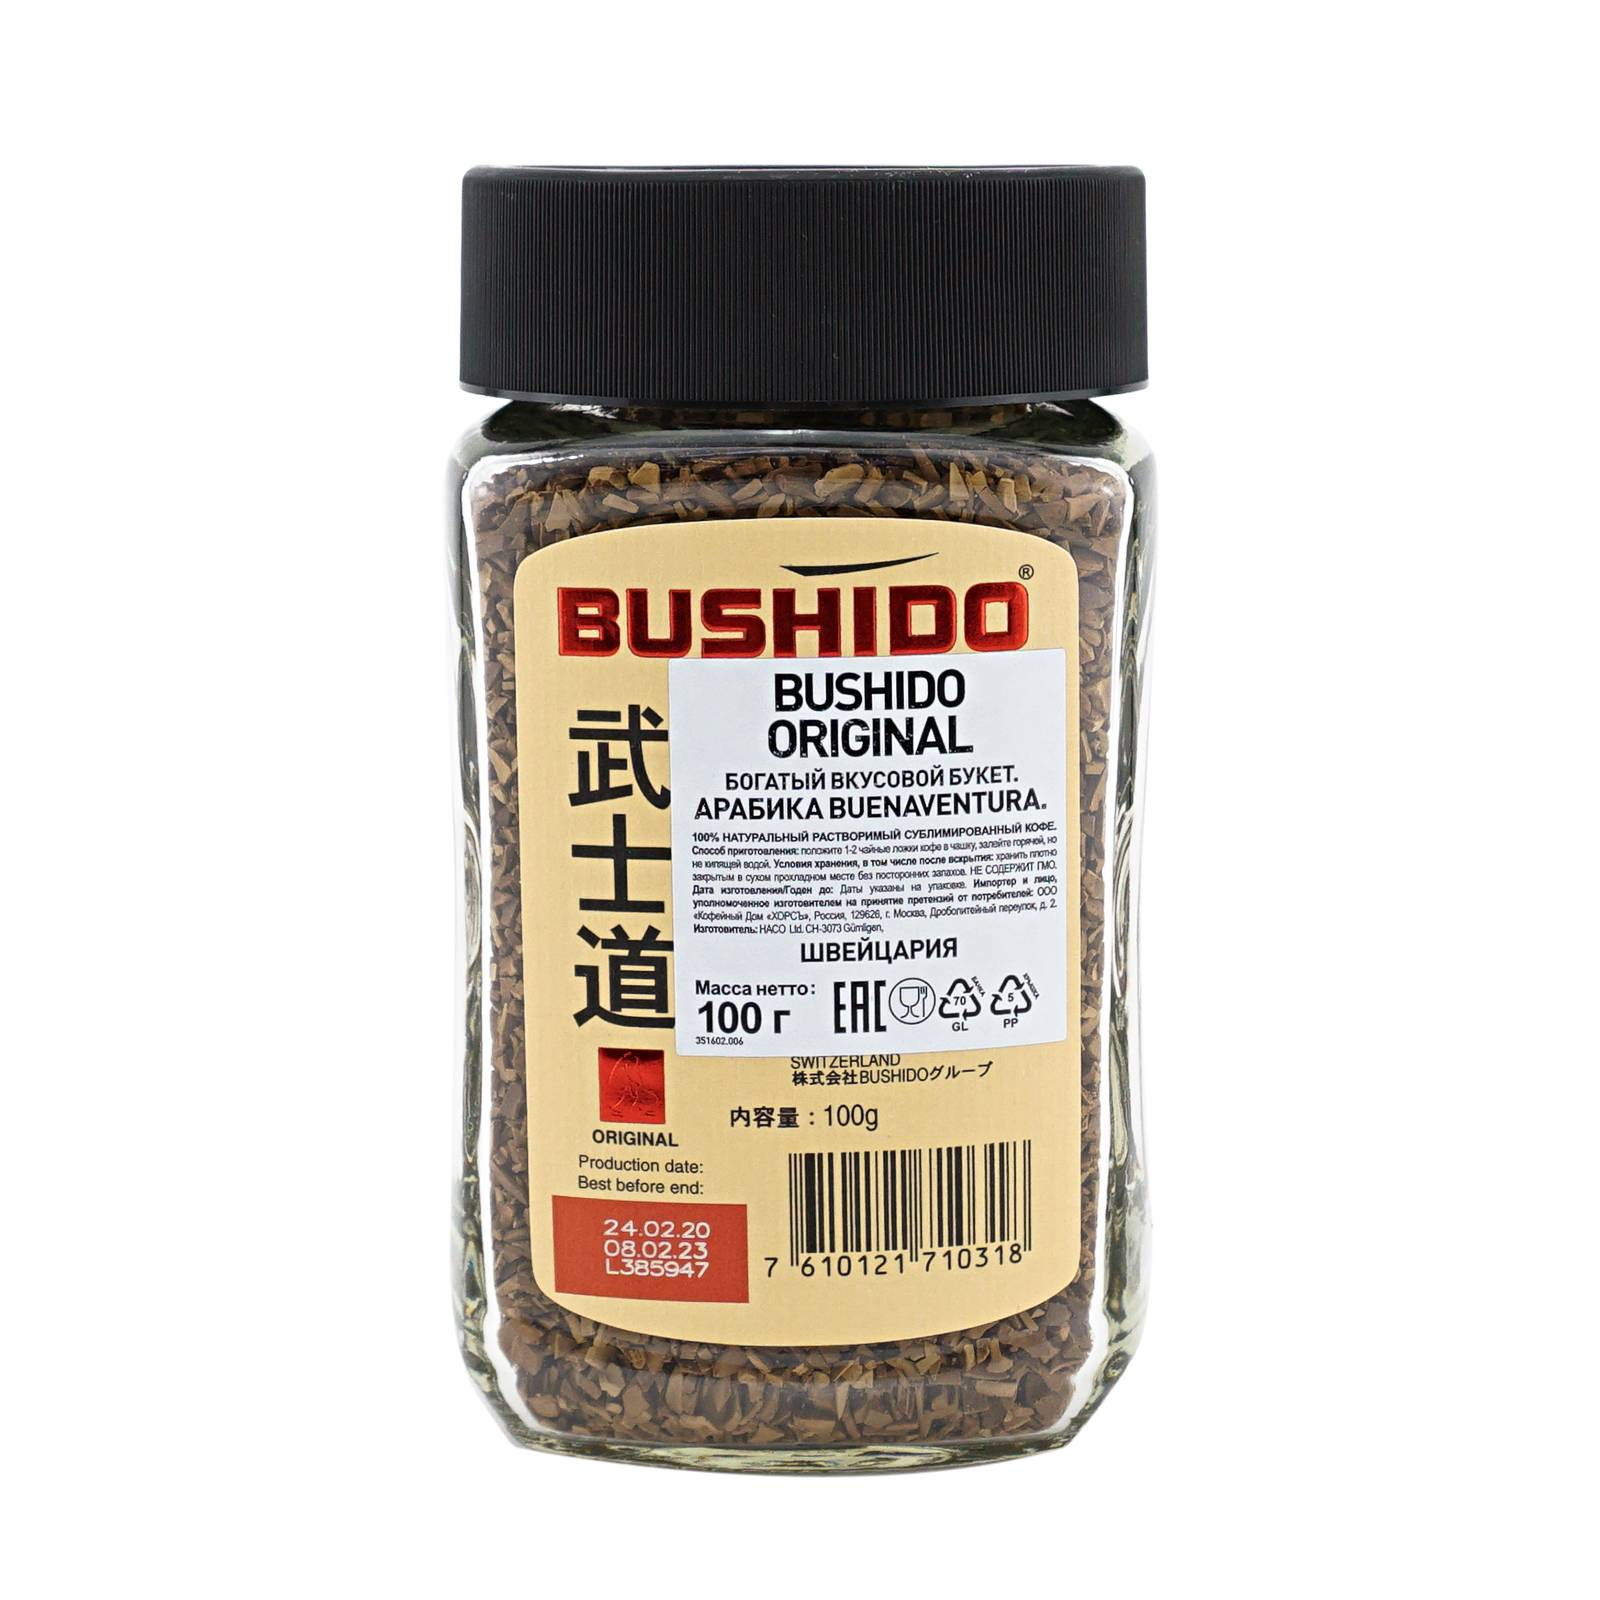 Японский кофе бушидо (bushido): виды, отзывы потребителей